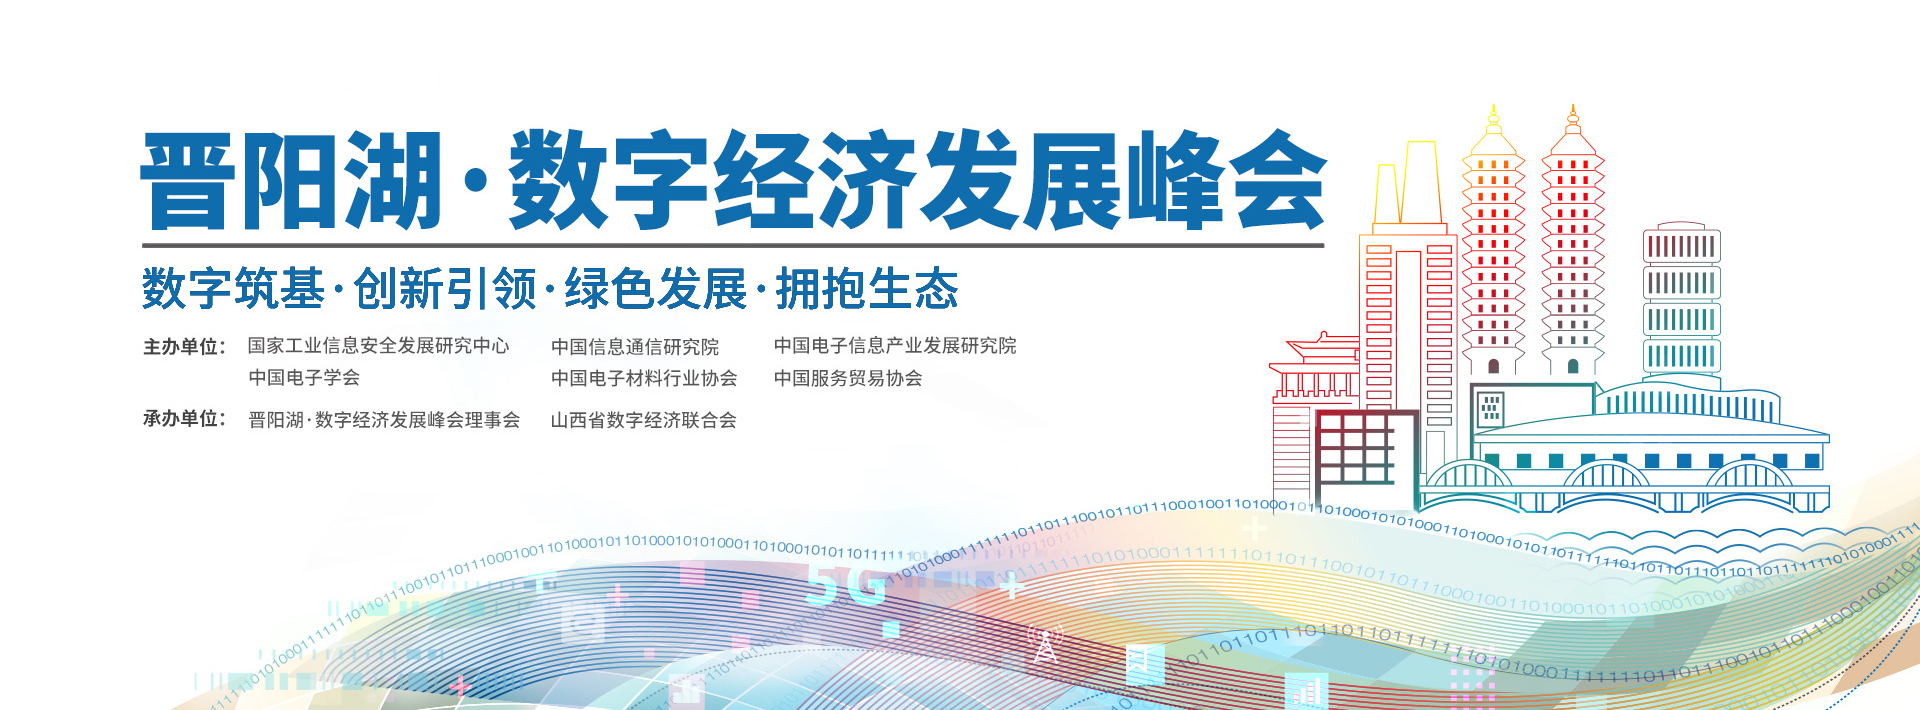 齐聚龙城太原  共话数字经济——自定义科技邀您参加晋阳湖·数字经济发展峰会